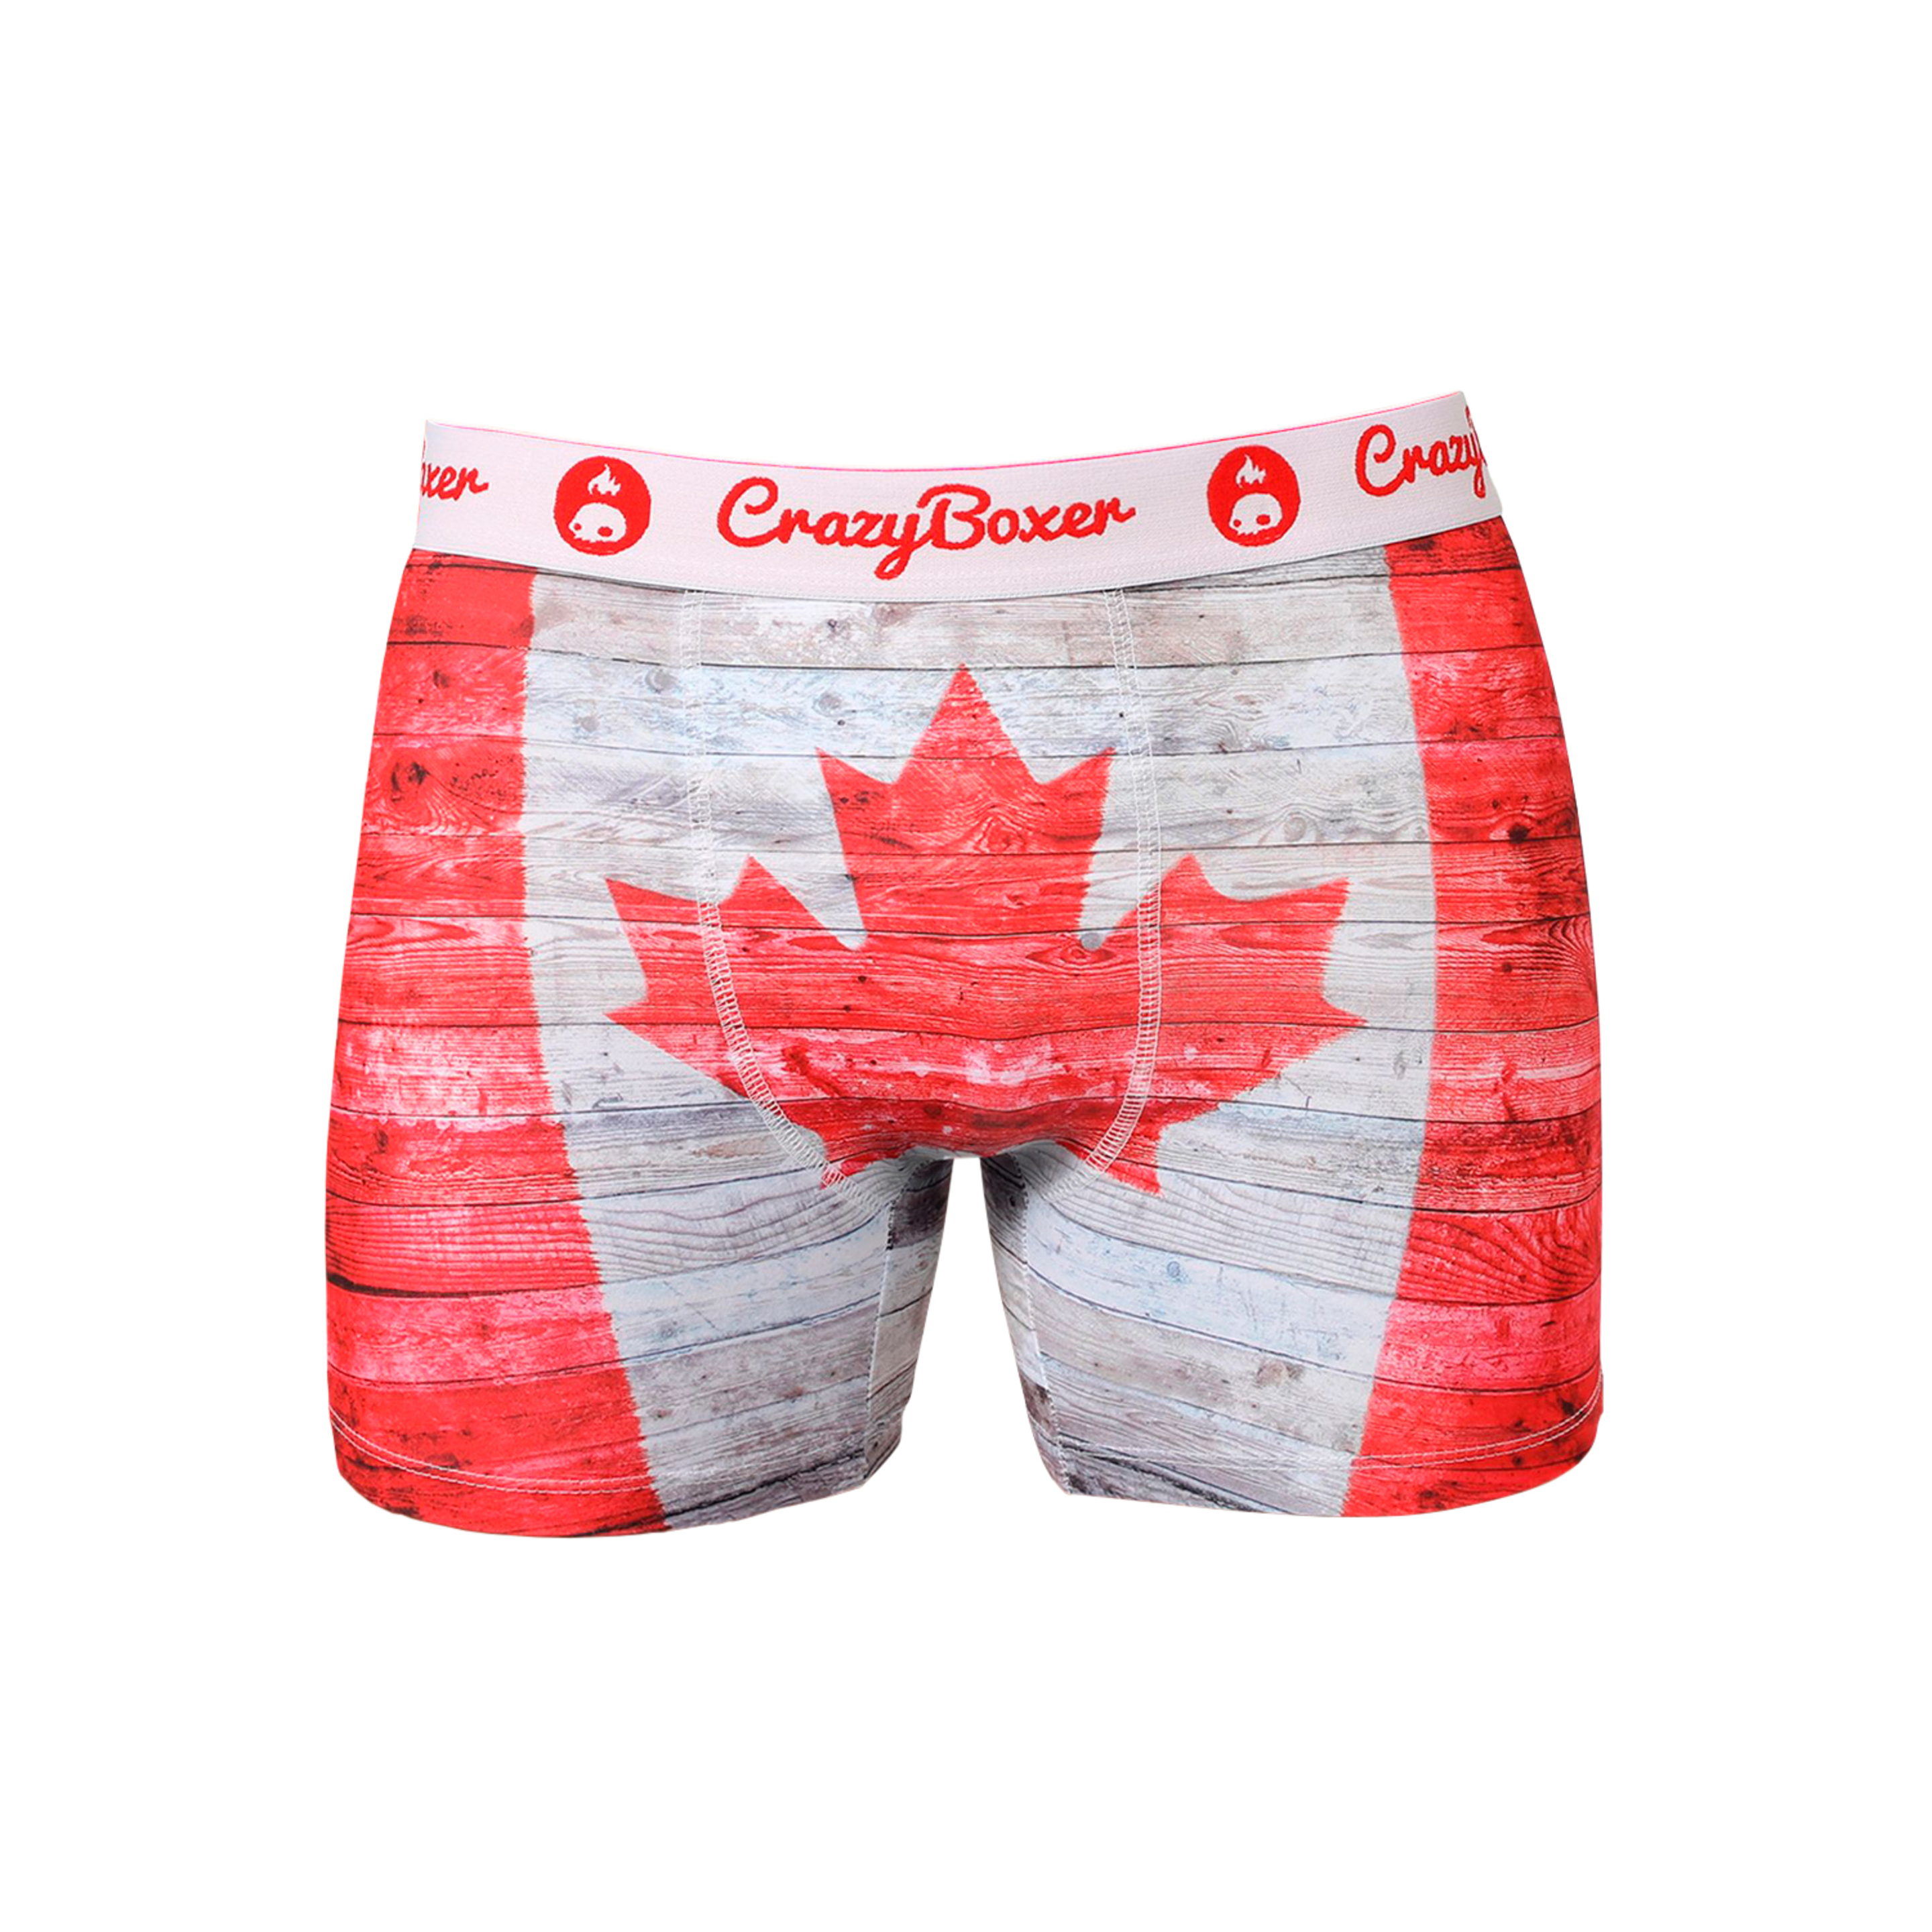 Calzoncillos Crazy Boxer Canada - blanco-rojo - 